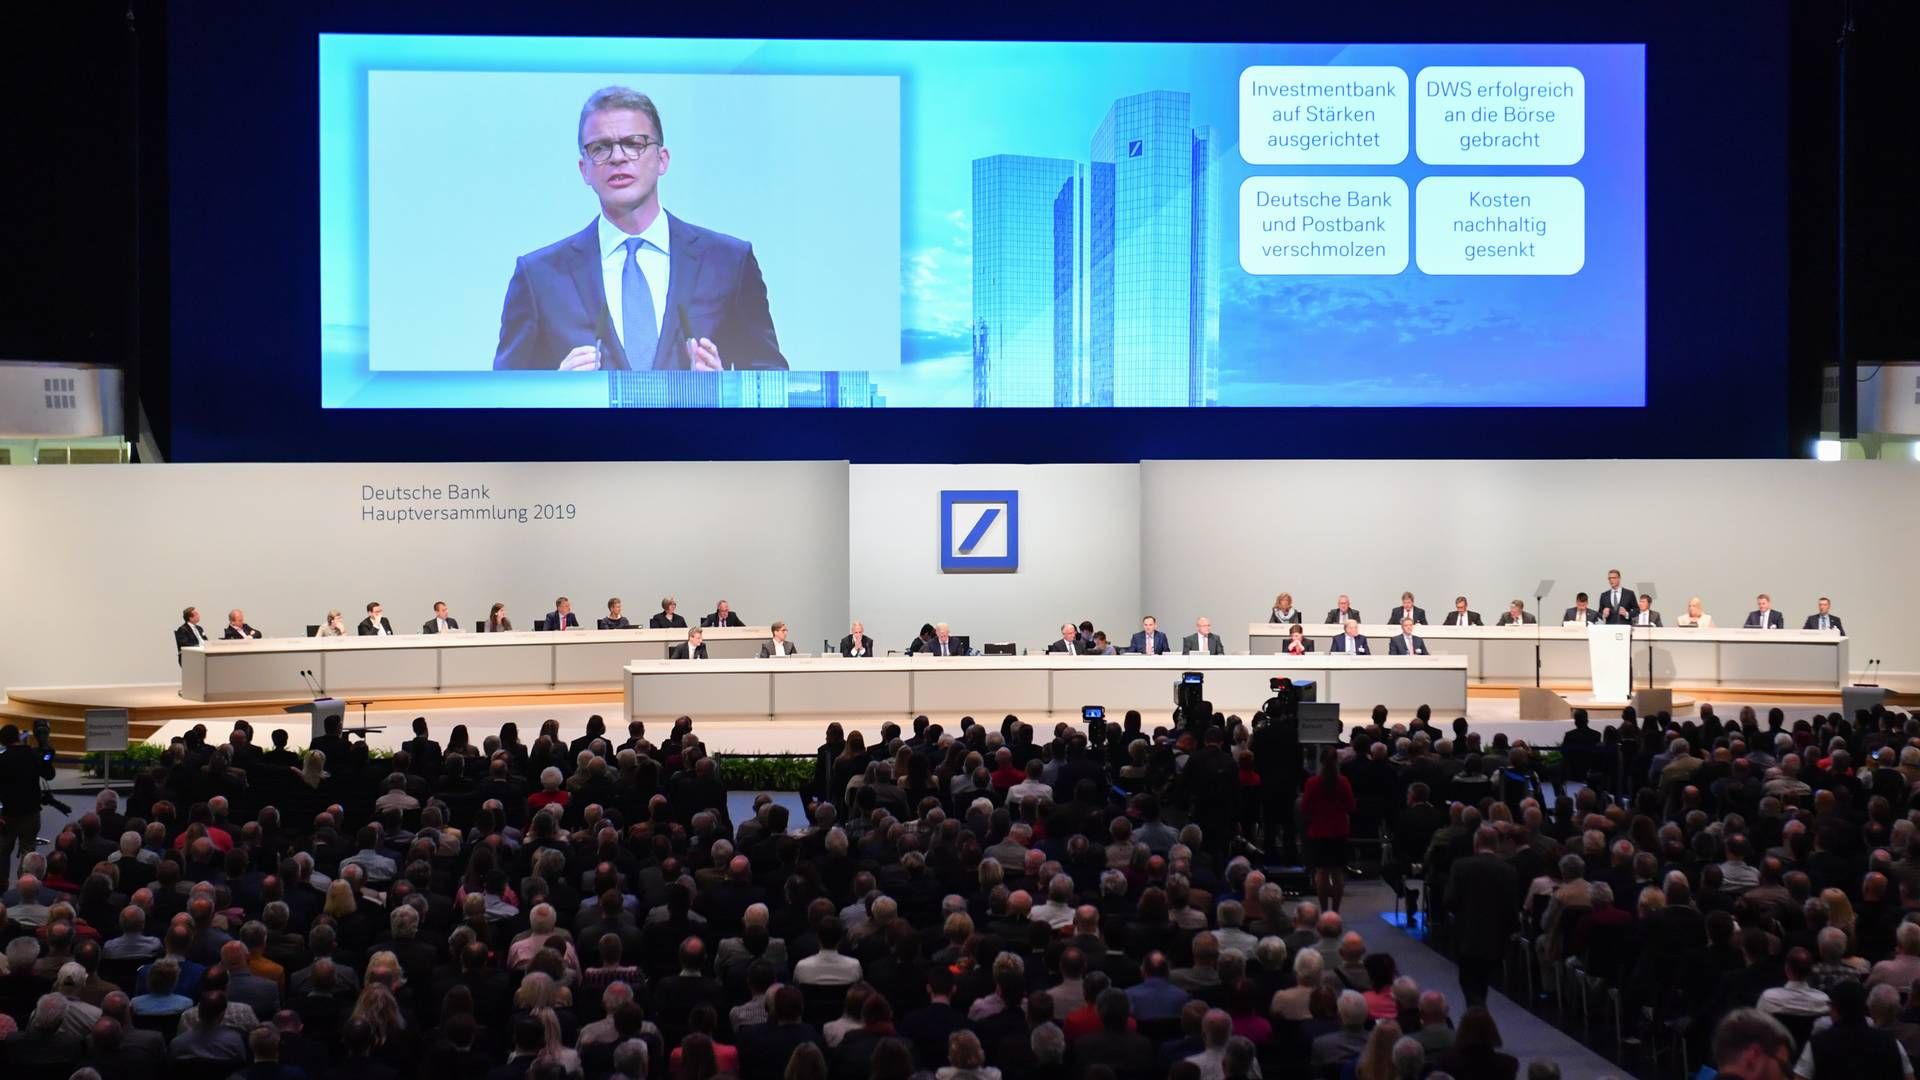 Früher war alles besser: Hauptversammlung der Deutschen Bank 2019 in der Frankfurter Festhalle | Foto: picture alliance/dpa | Arne Dedert